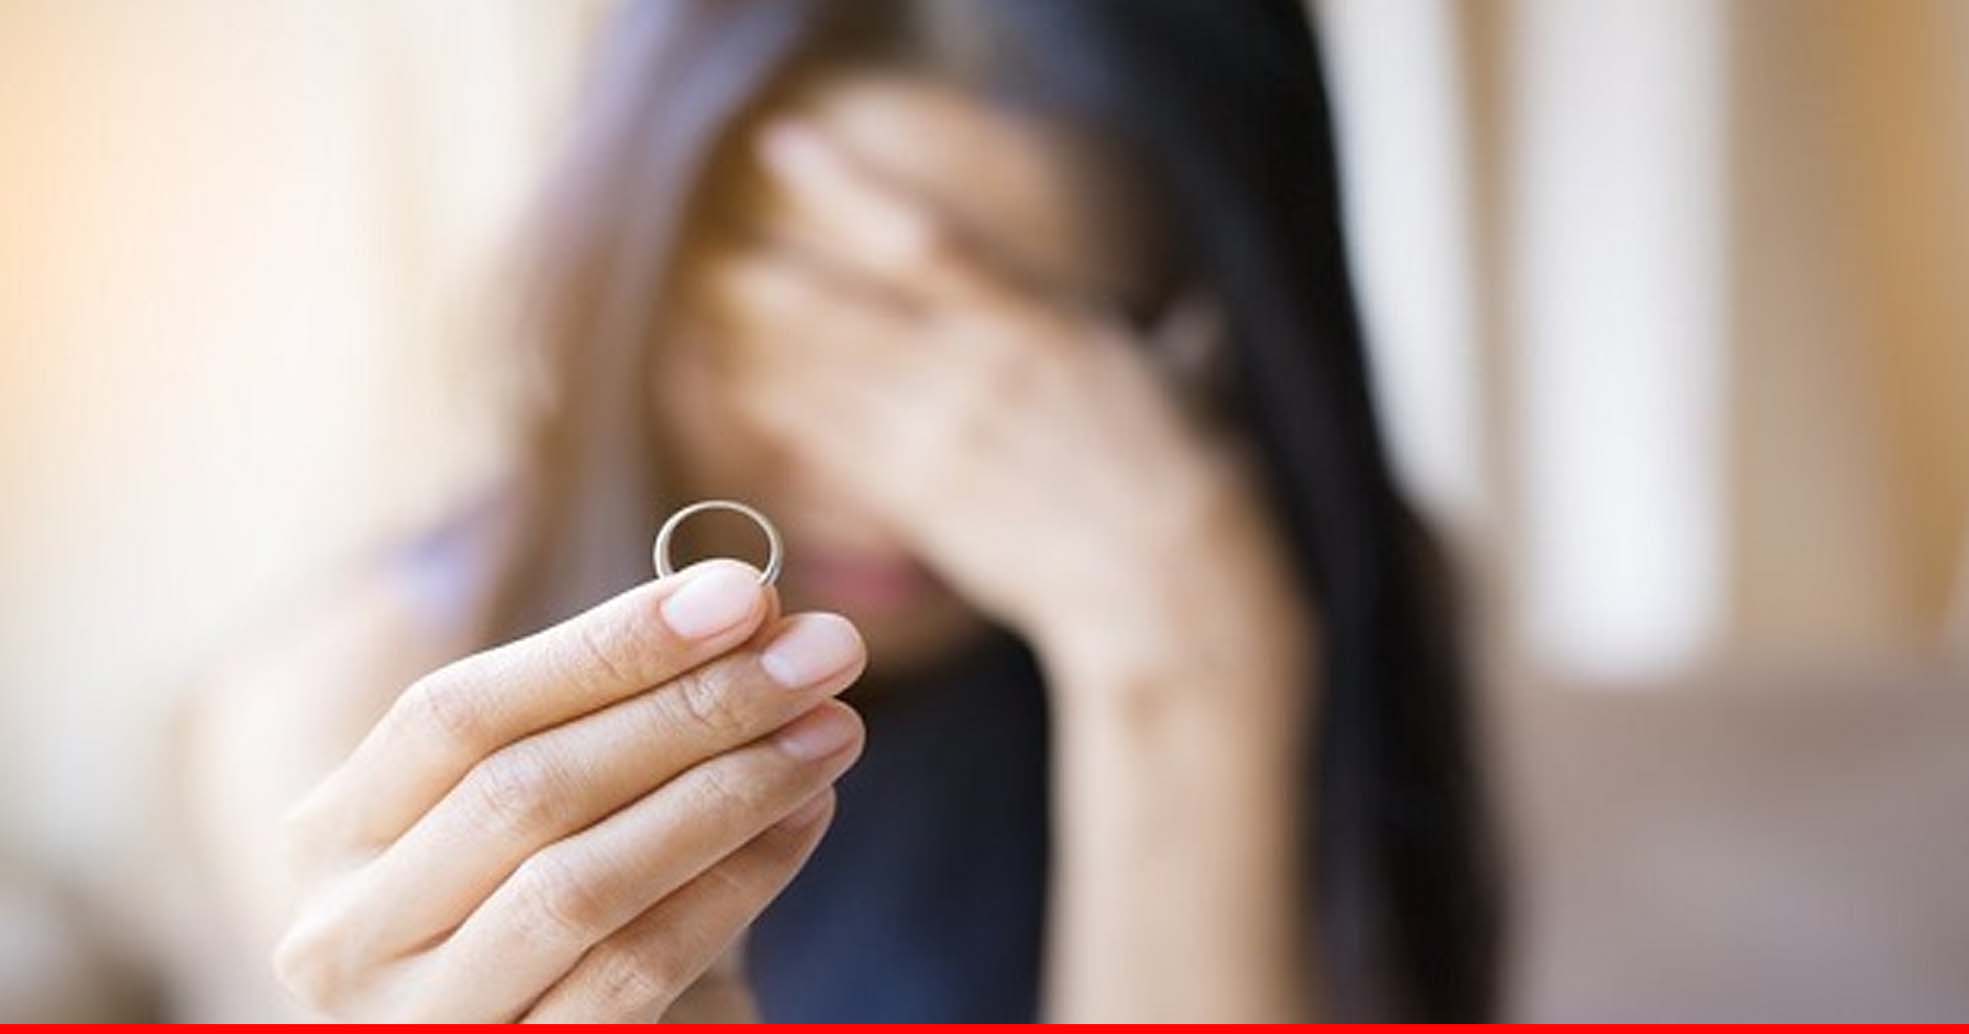 अगर आपके पार्टनर में हैं ये 5 बातें, तो गलत हो सकता है शादी का फैसला